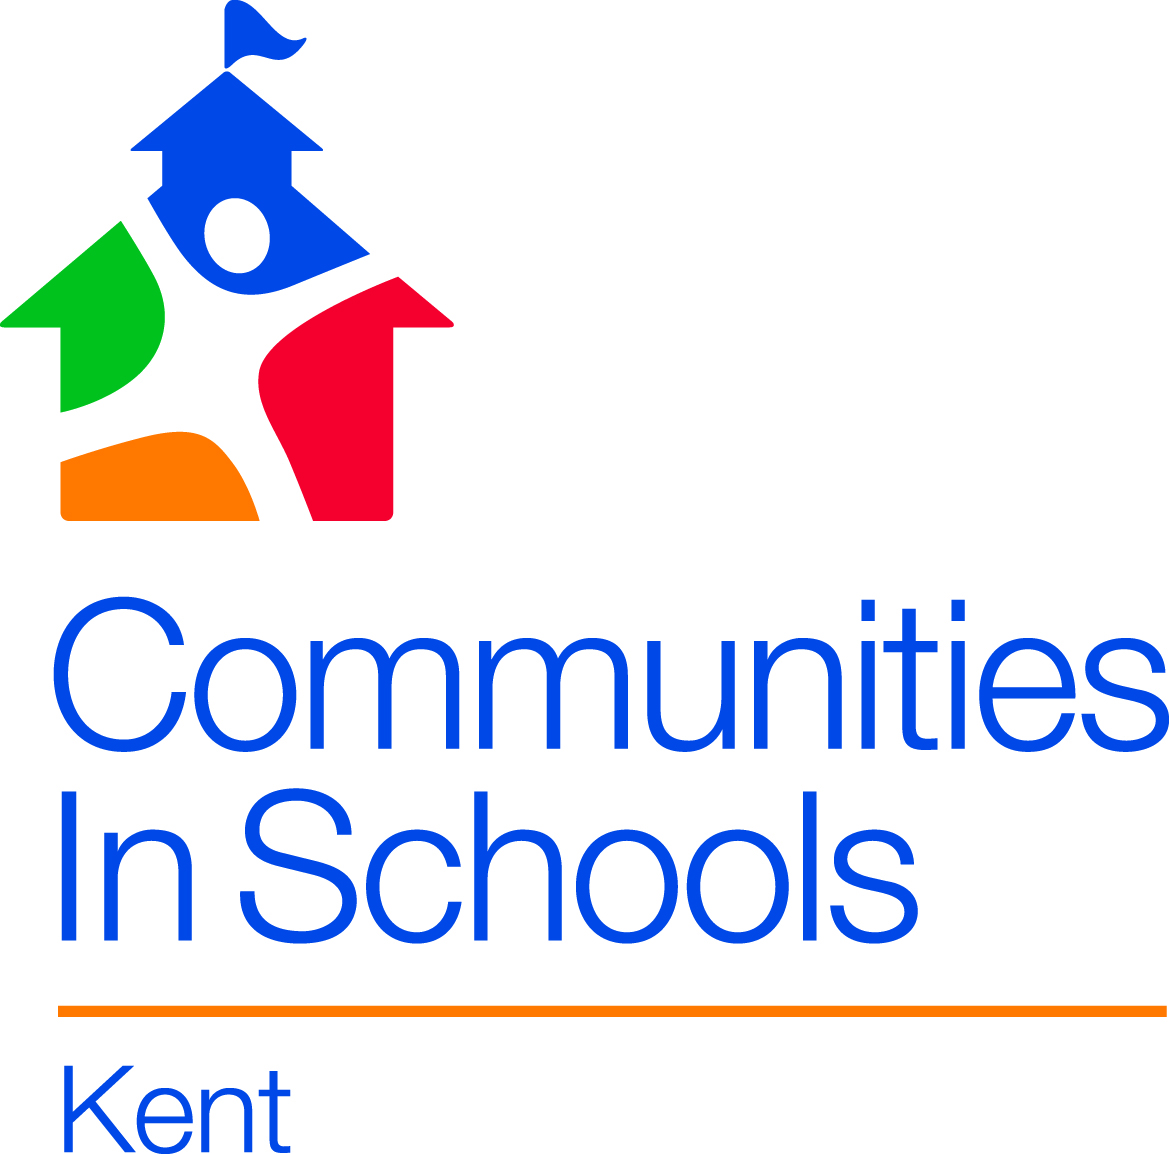 Communities in Schools Kent